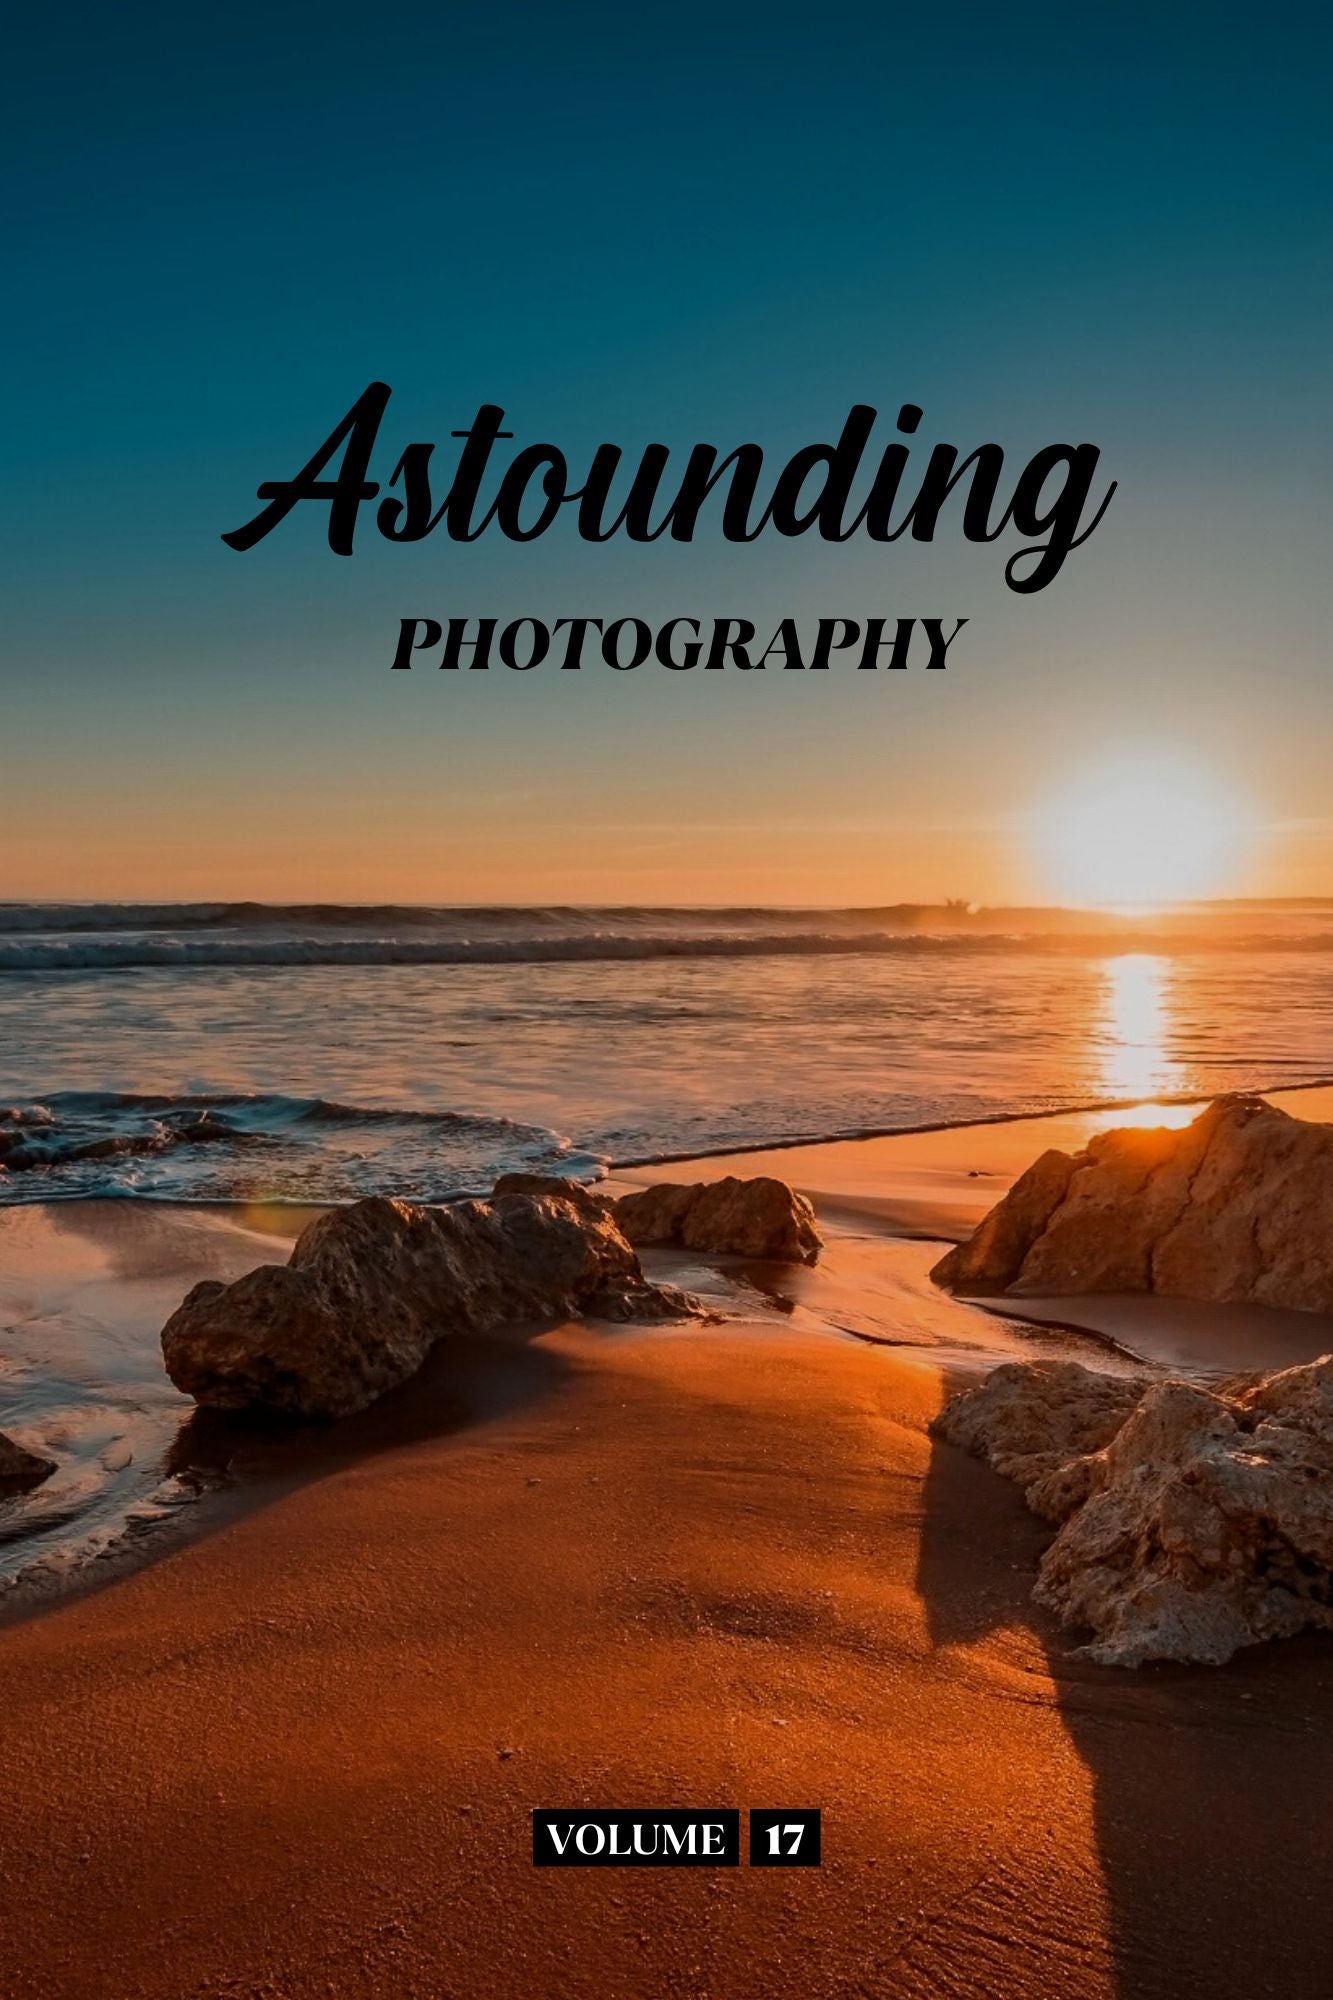 Astounding Photography Volume 17 (Physical Book Pre-Order)